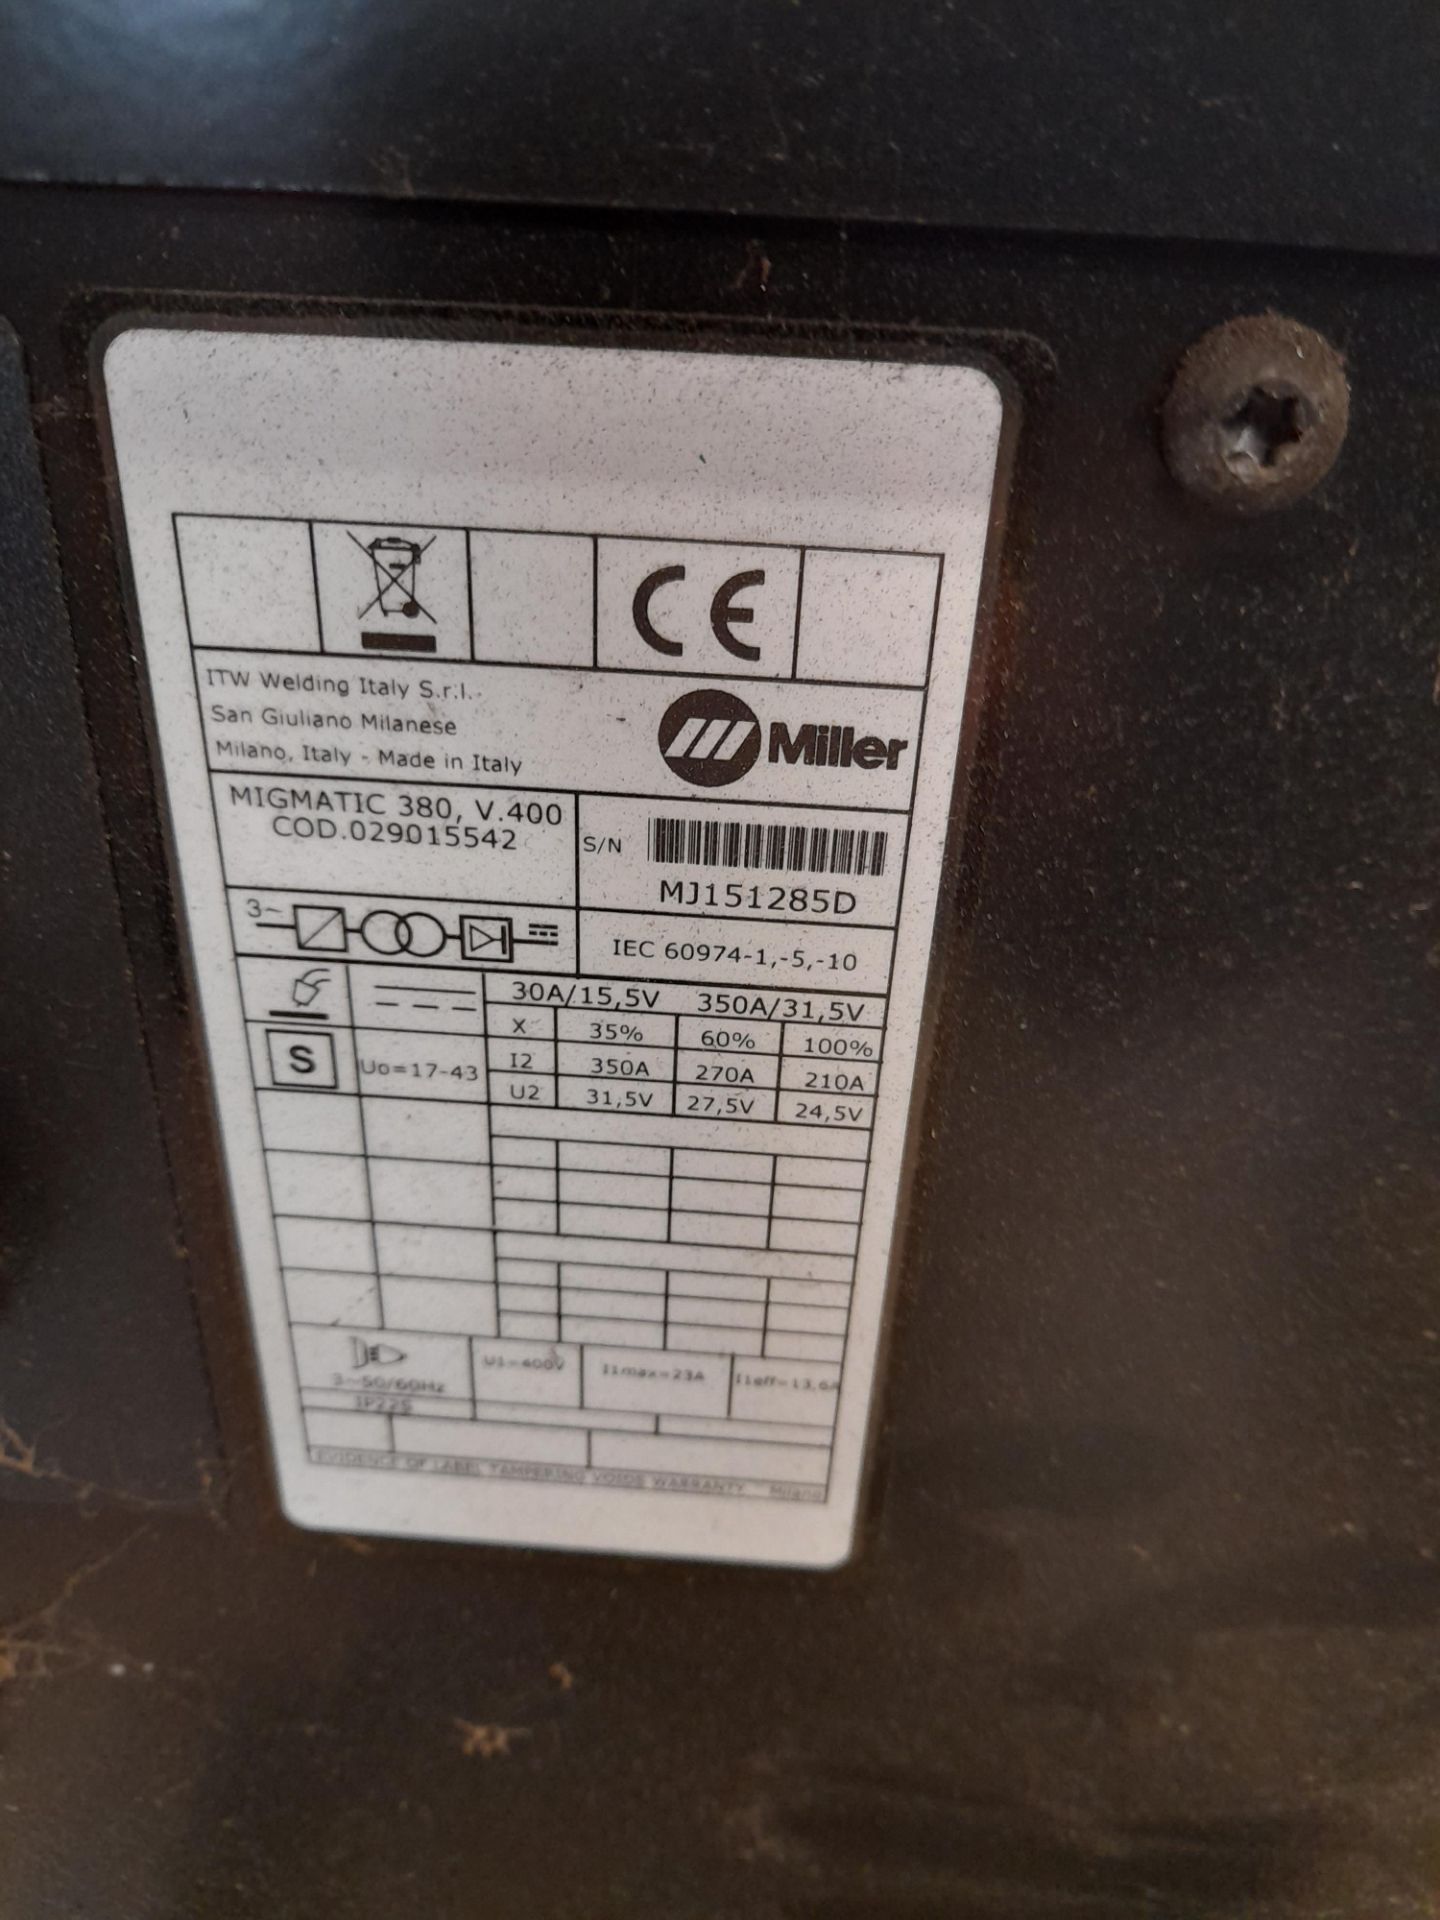 Miller Migmatic 380 V400 mig welder, Serial Number - Image 3 of 3